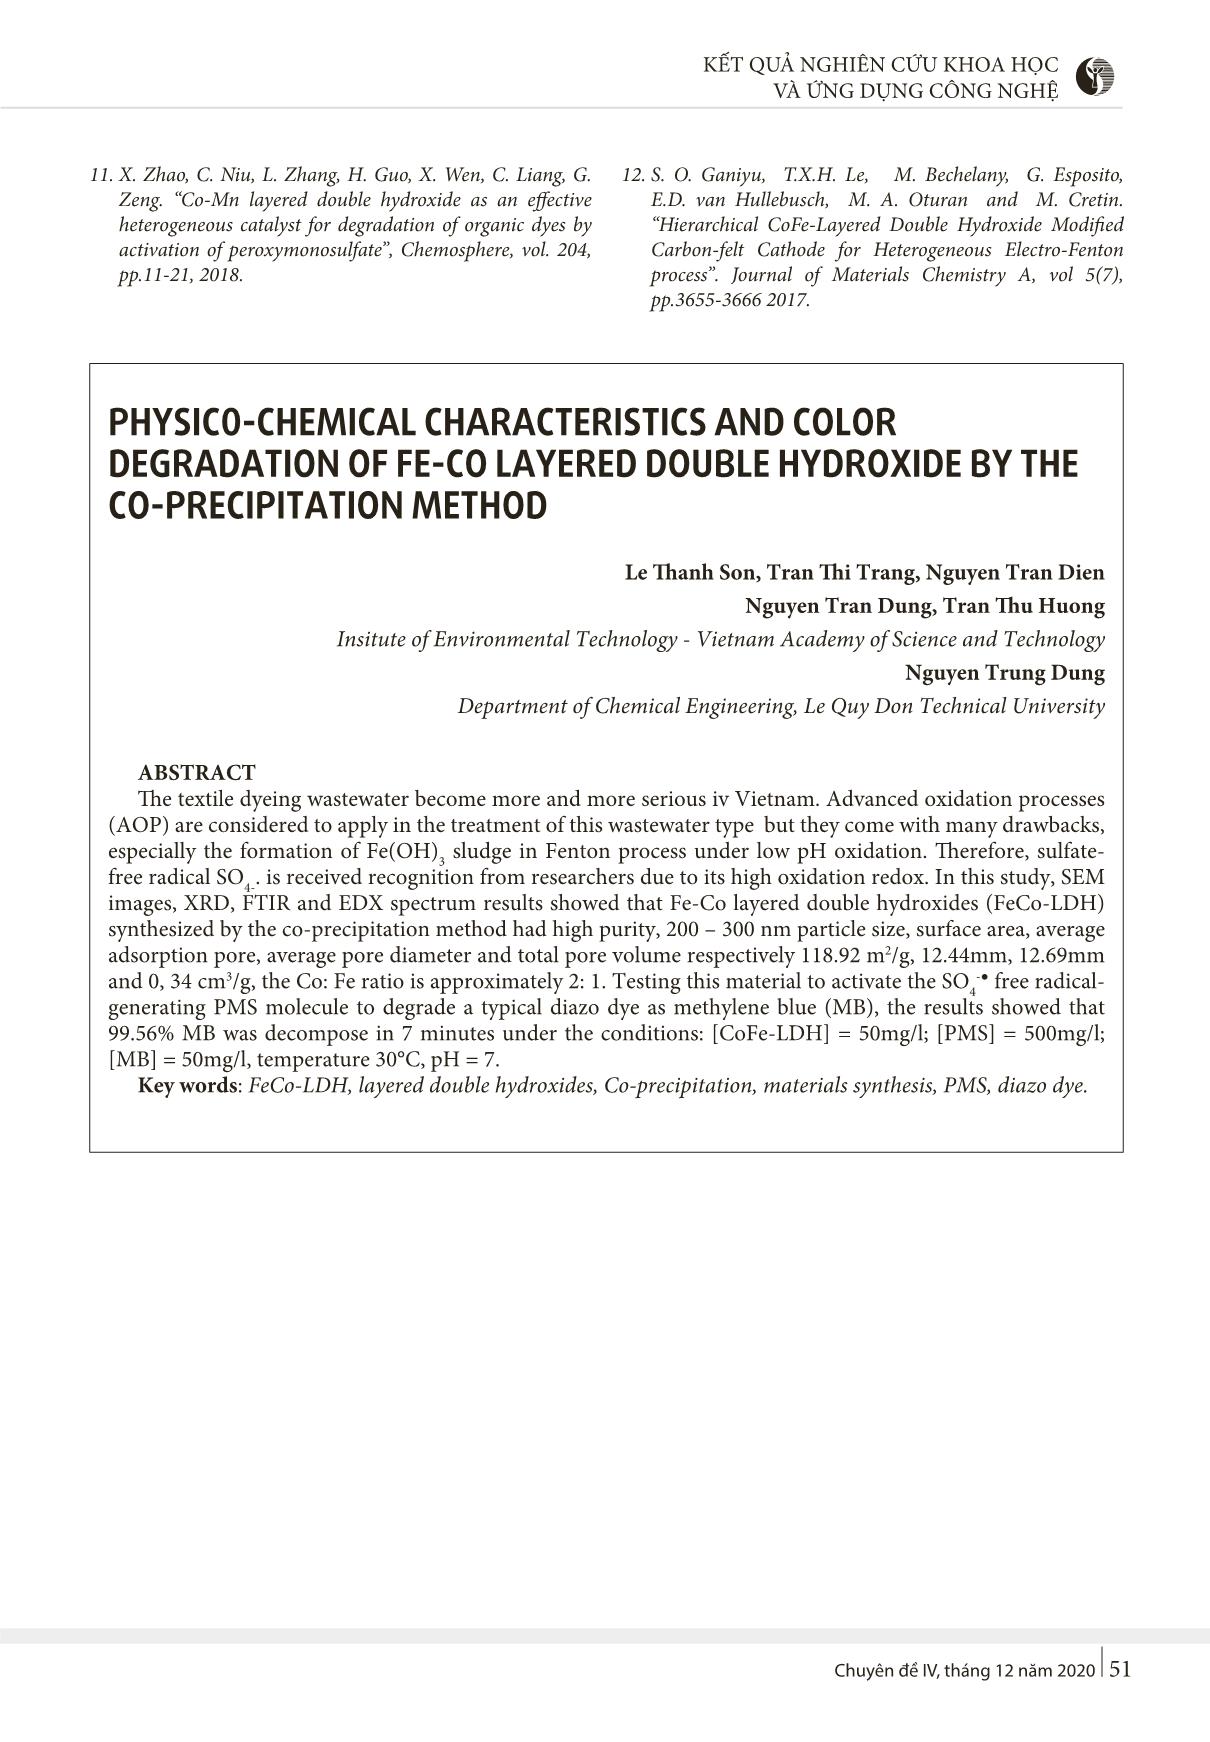 Đặc trưng hóa lý và khả năng phân hủy chất màu của vật liệu hydroxit lớp kép Fe-Co được tổng hợp bằng phương pháp đồng kết tủa trang 5